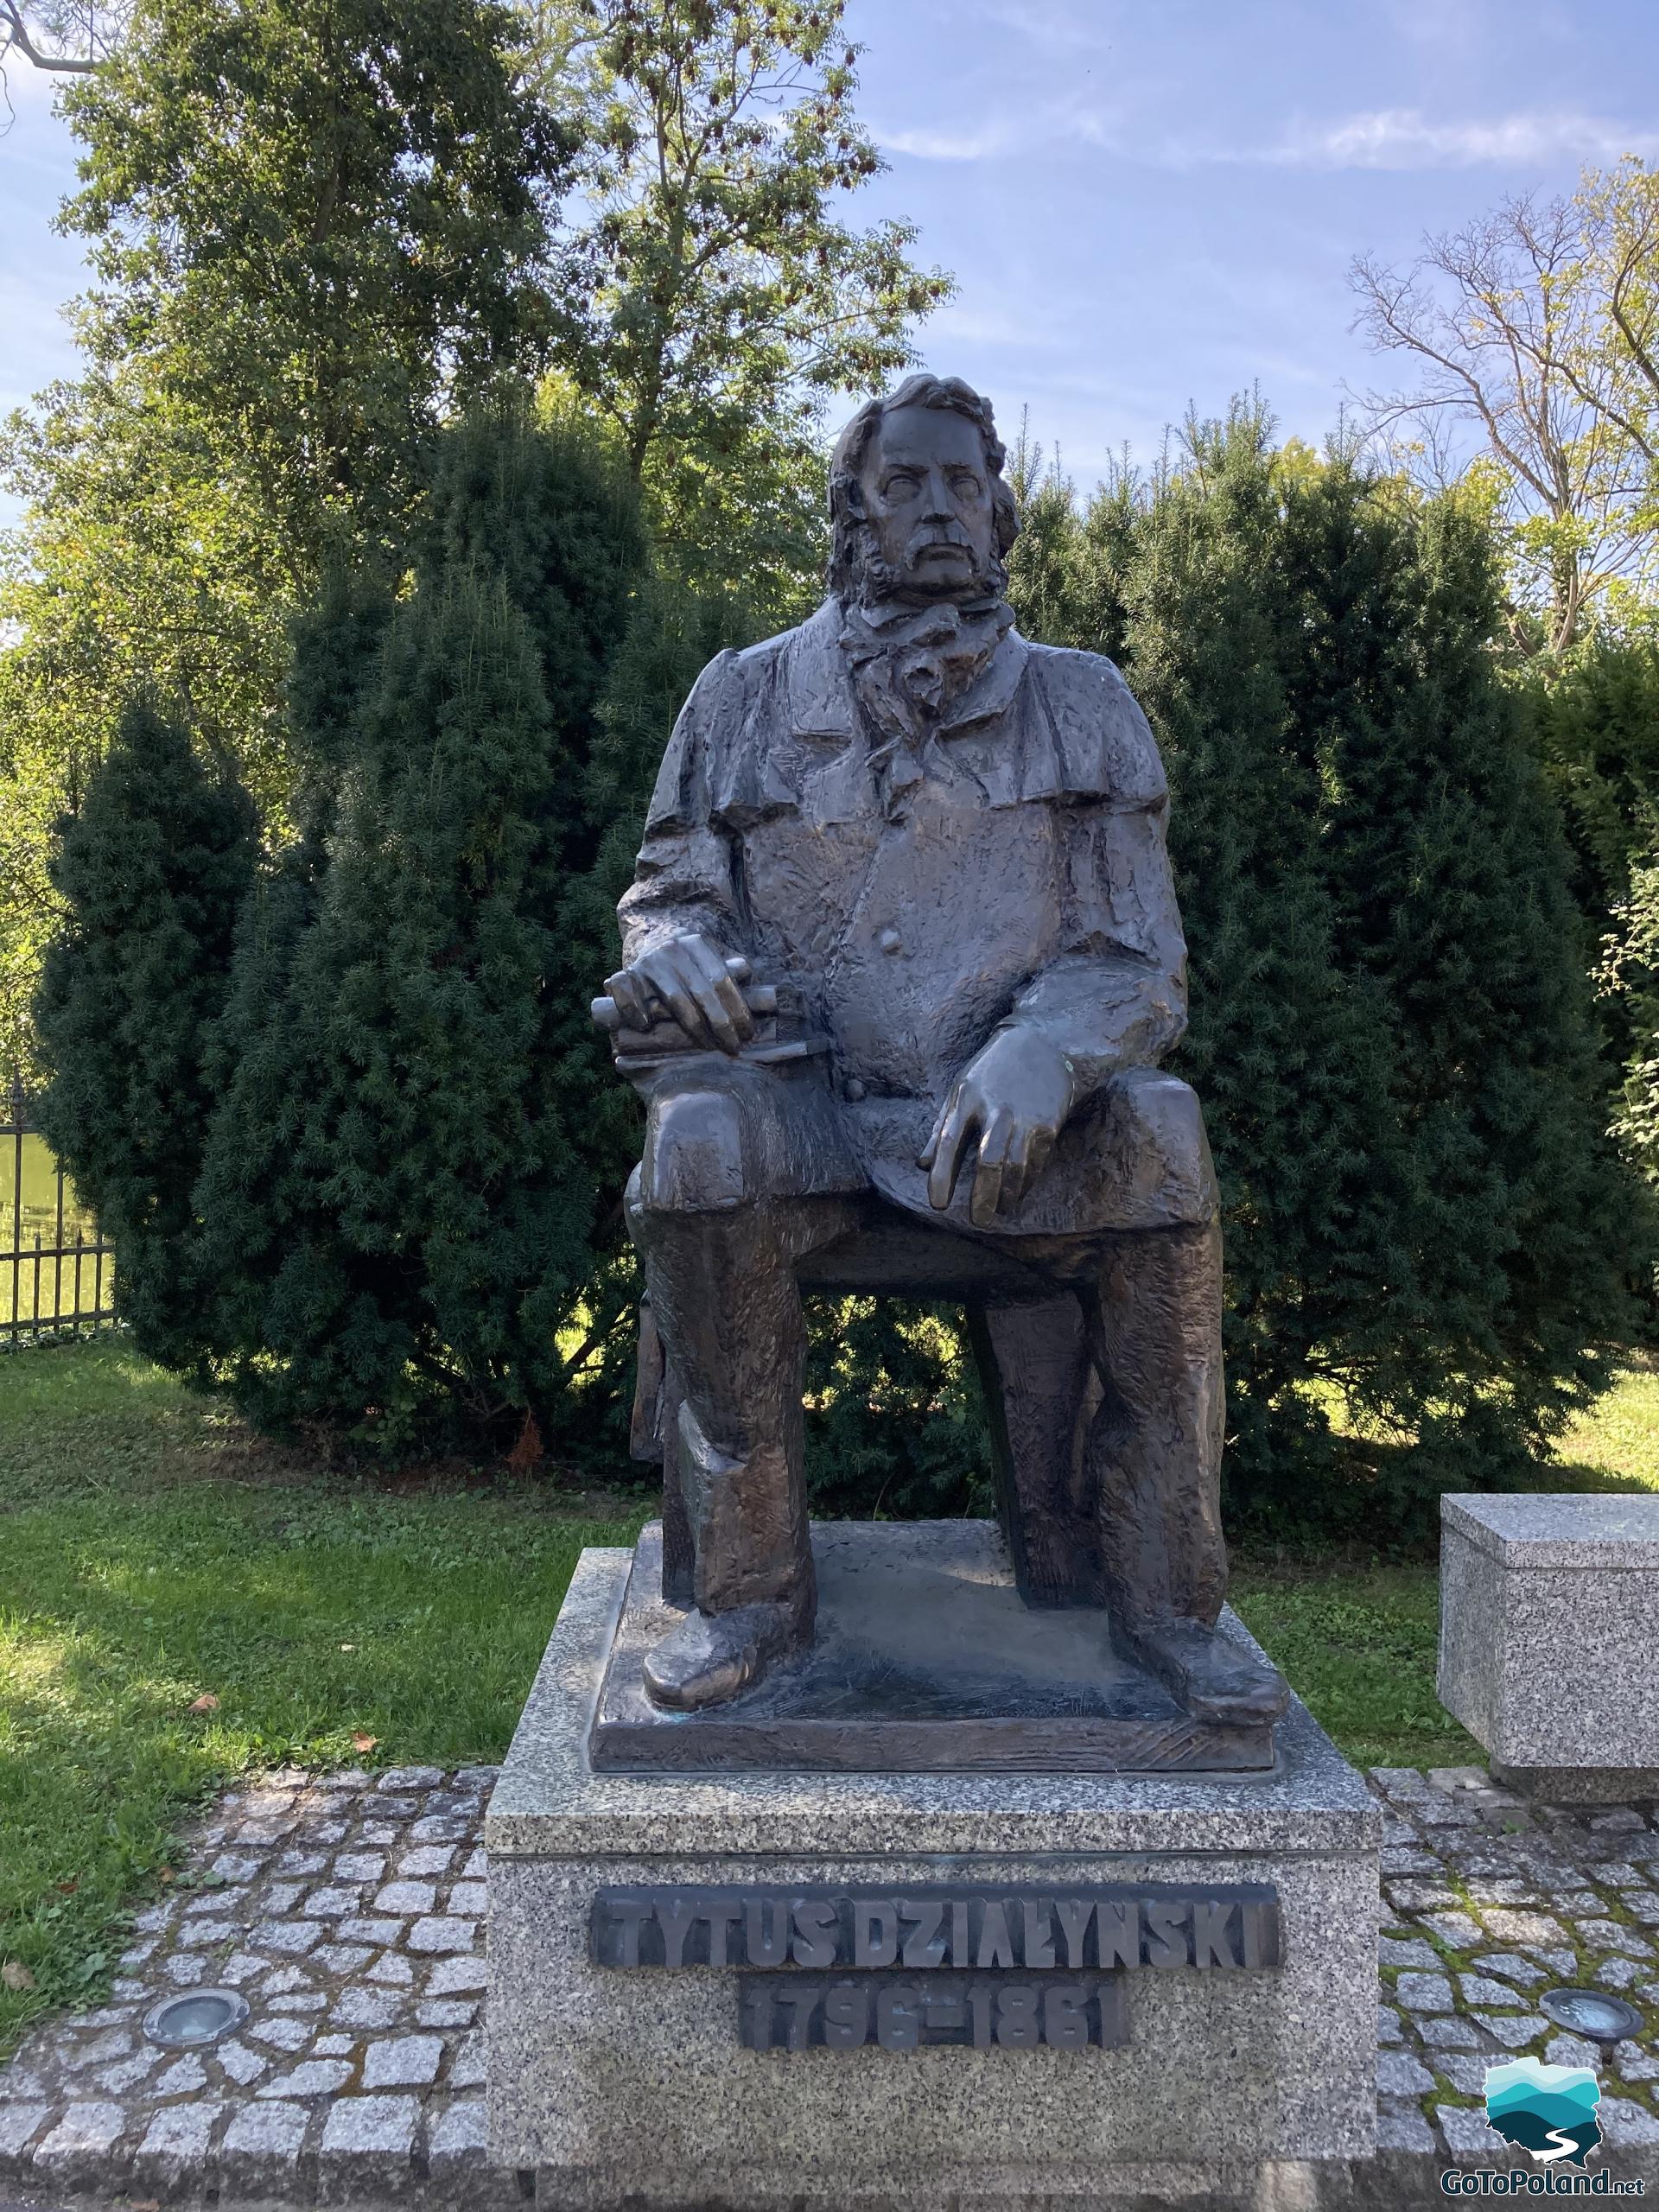 A statue of Tytus Działyński